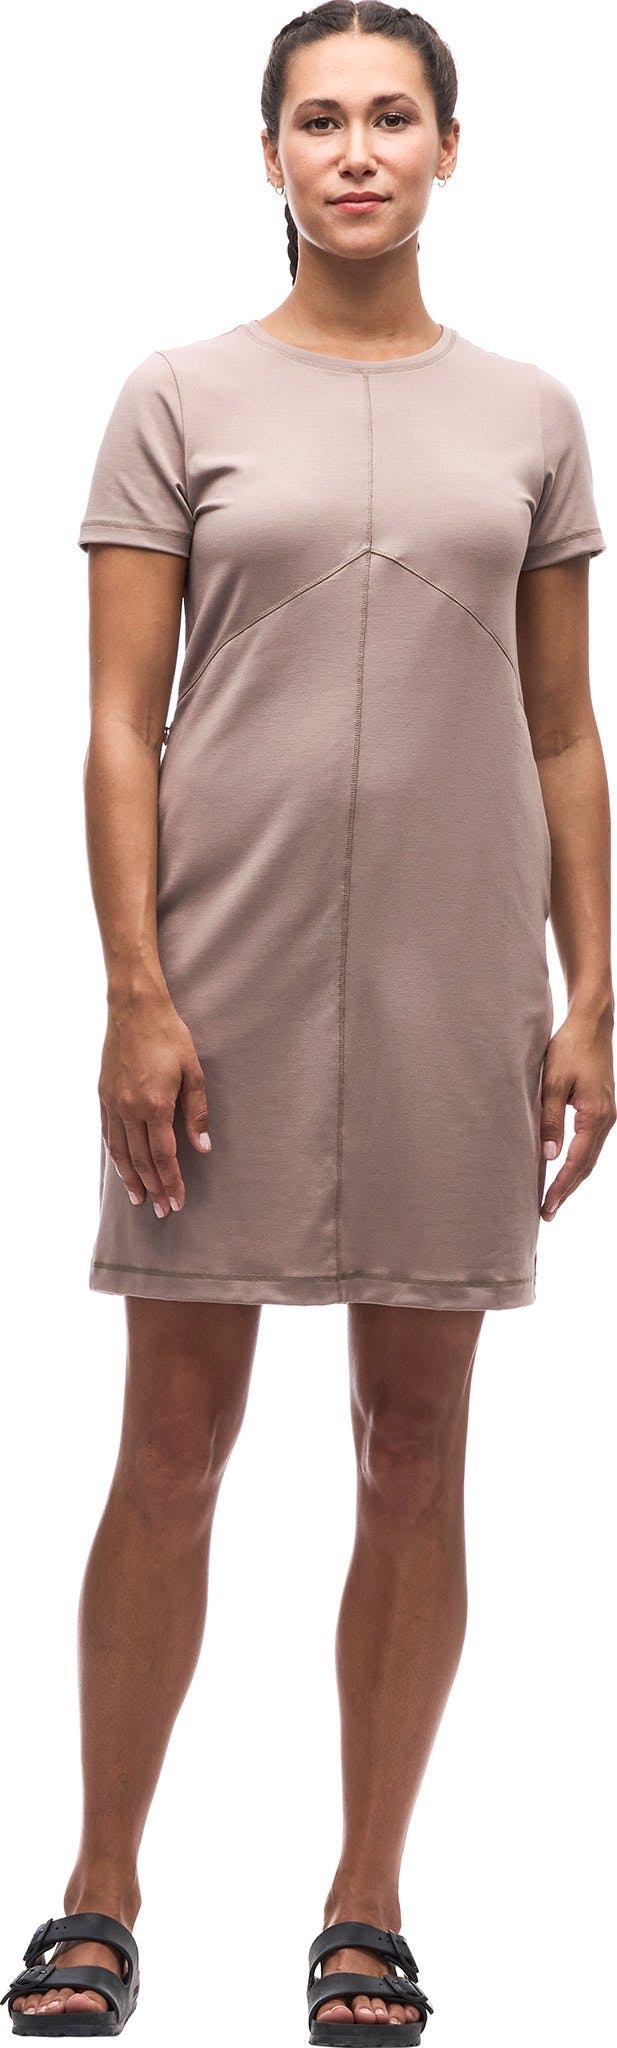 Product image for Kuiva III Short Sleeve Dress - Women's